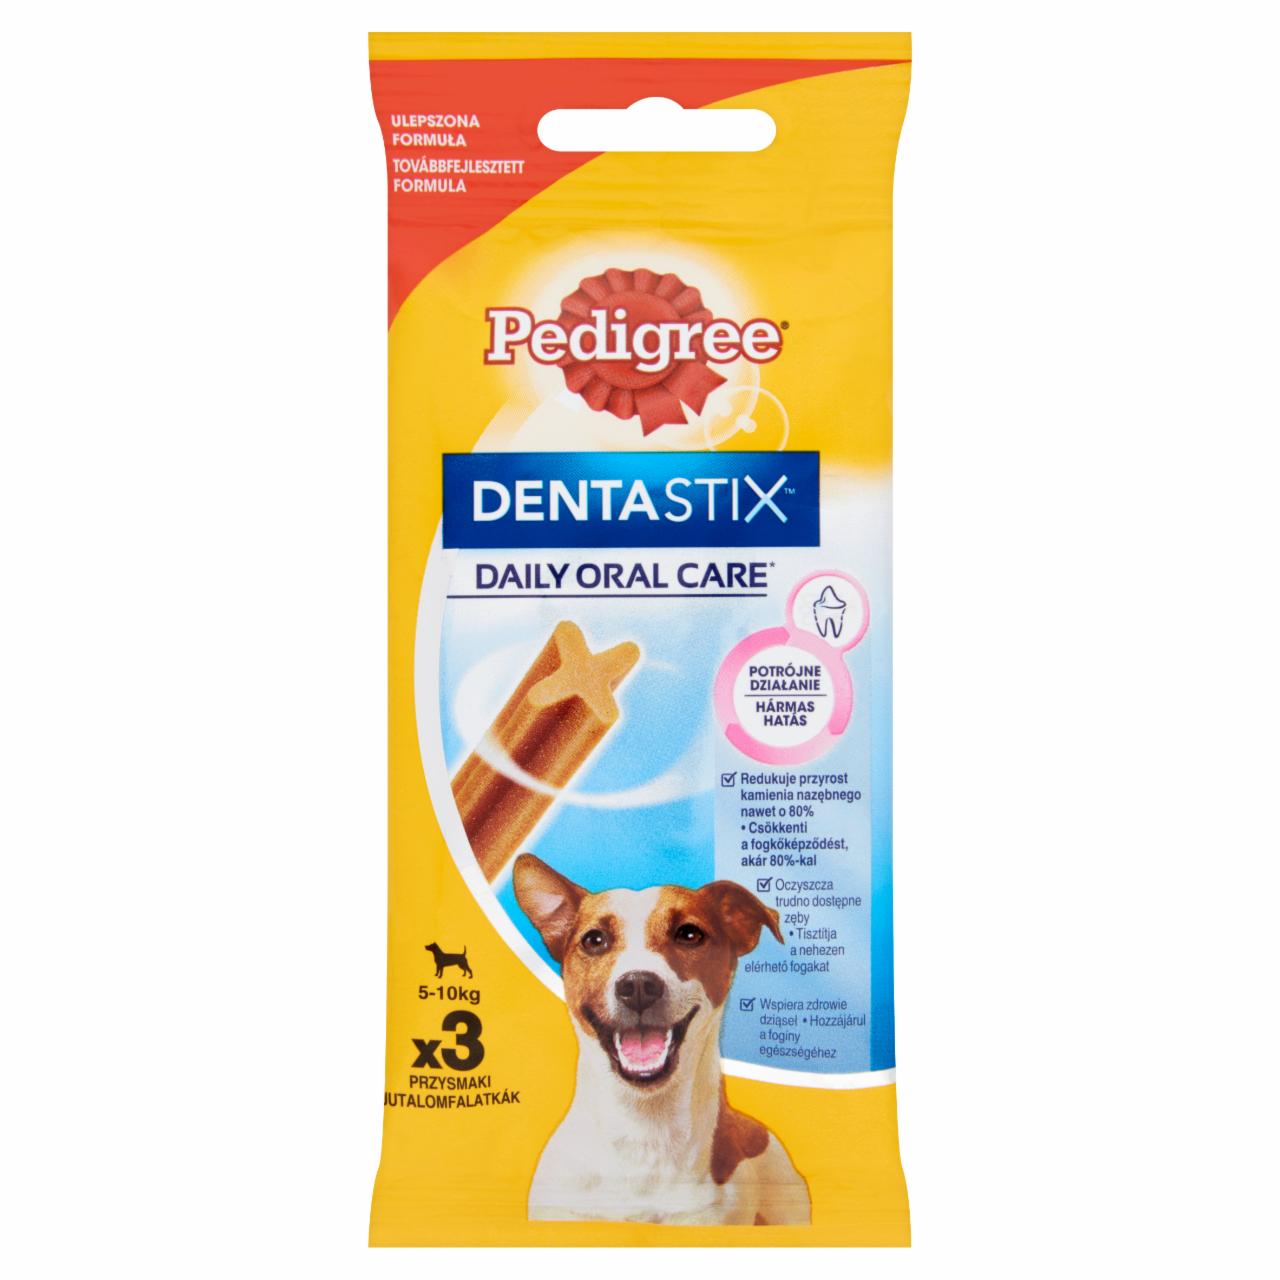 Képek - Pedigree DentaStix jutalomfalat 5-10 kg-os kutyáknak 3 db 45 g